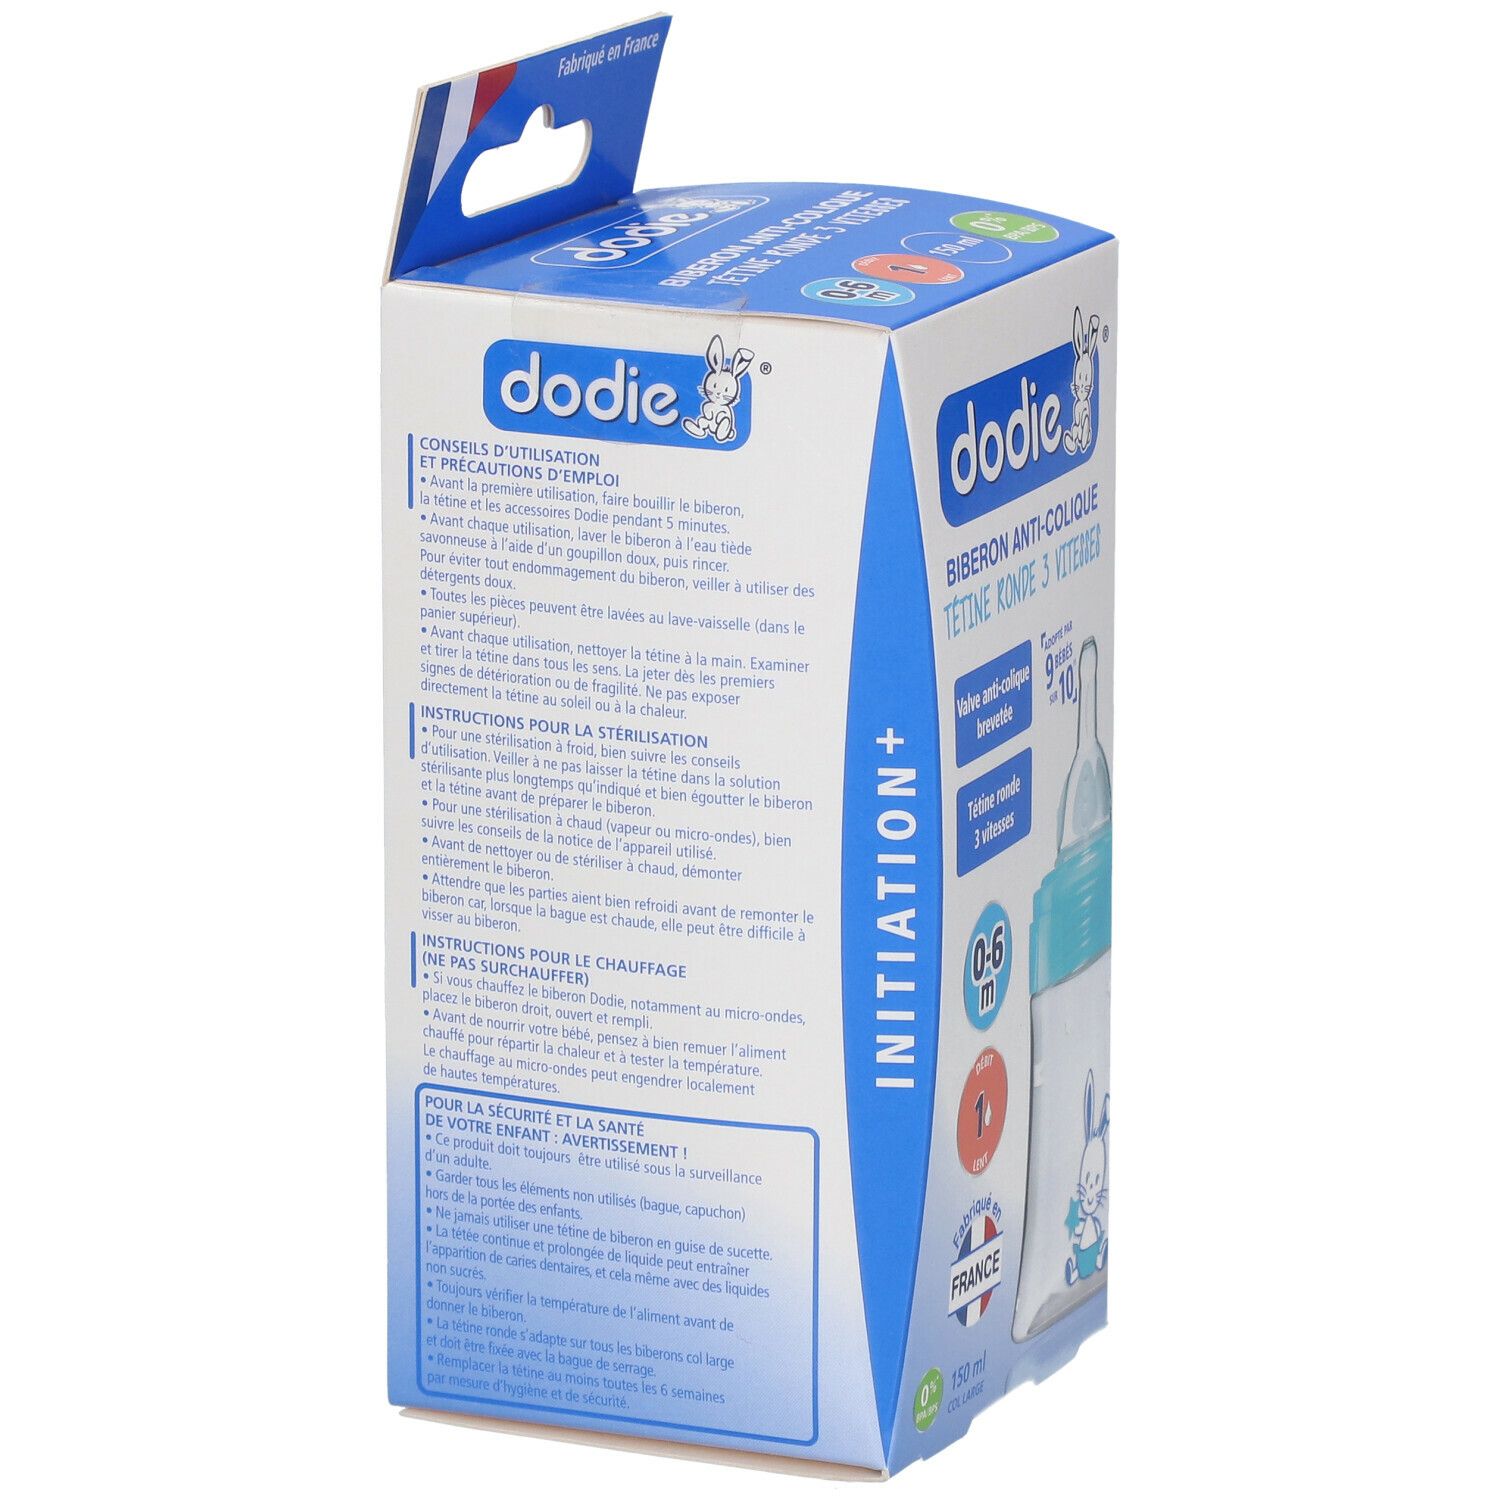 dodie® Initiation+ Biberon Anti-colique 150 ml avec tétine débit 1 décor